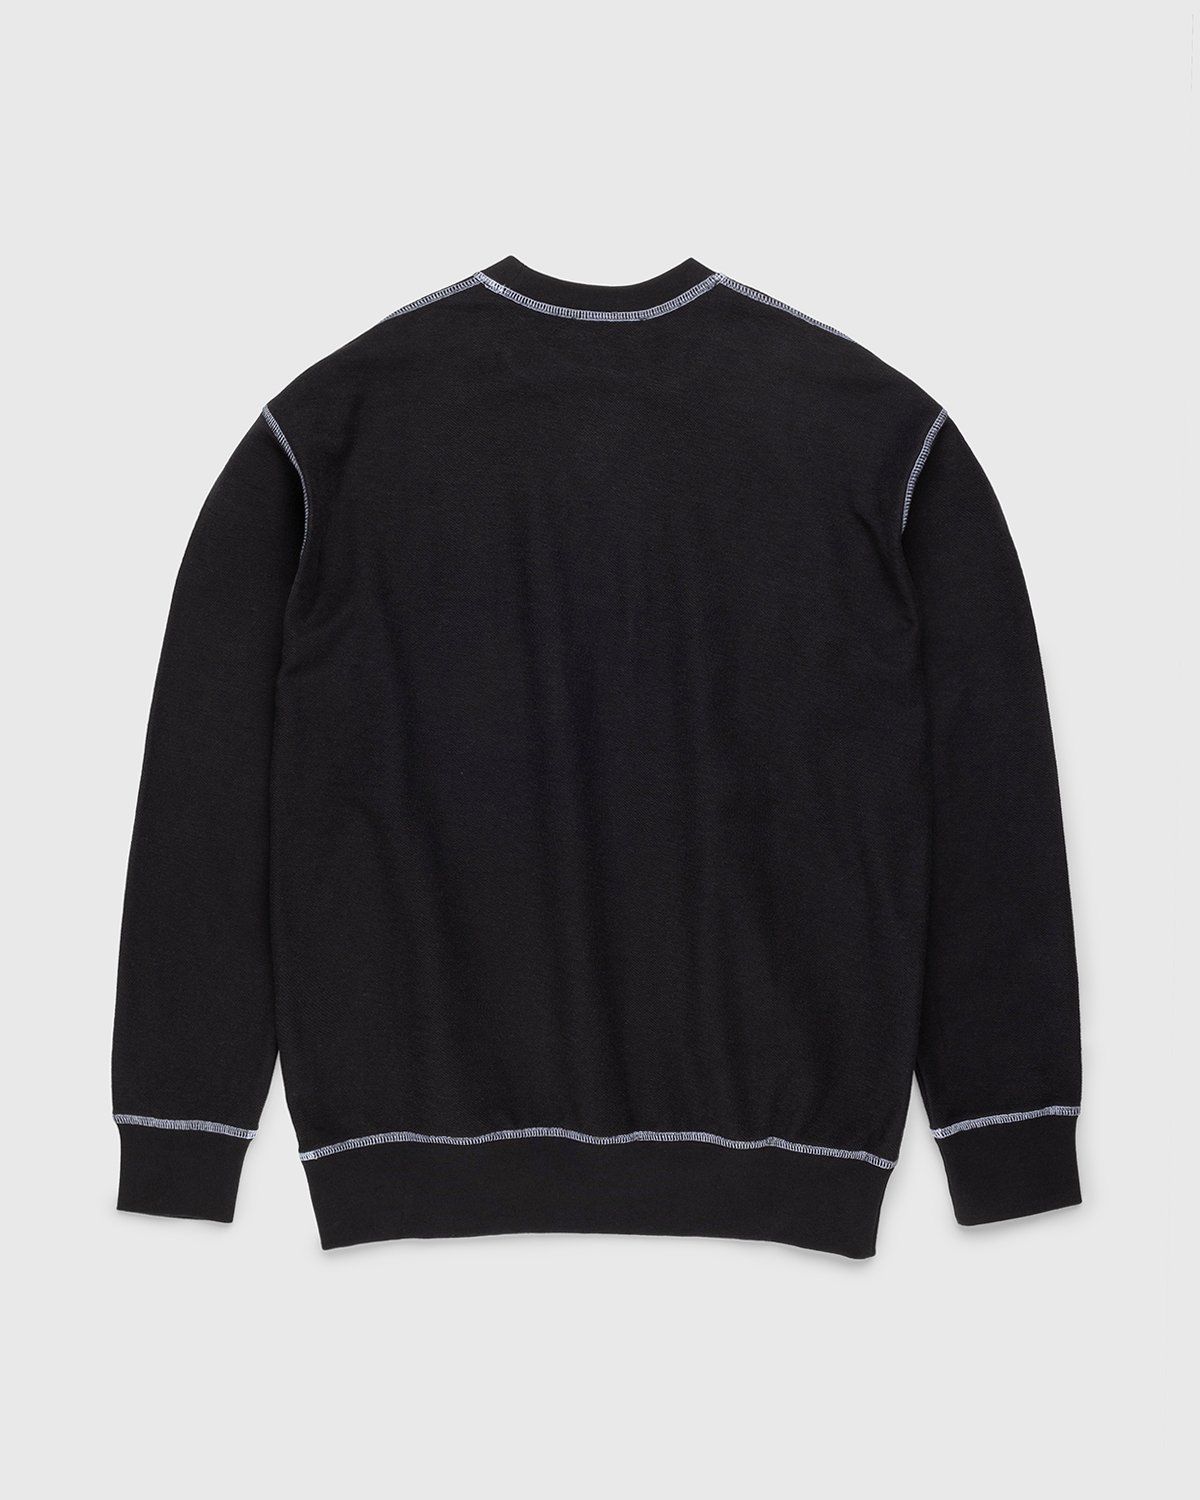 J.W. Anderson – Inside Out Contrast Sweatshirt Black - Sweats - Black - Image 2